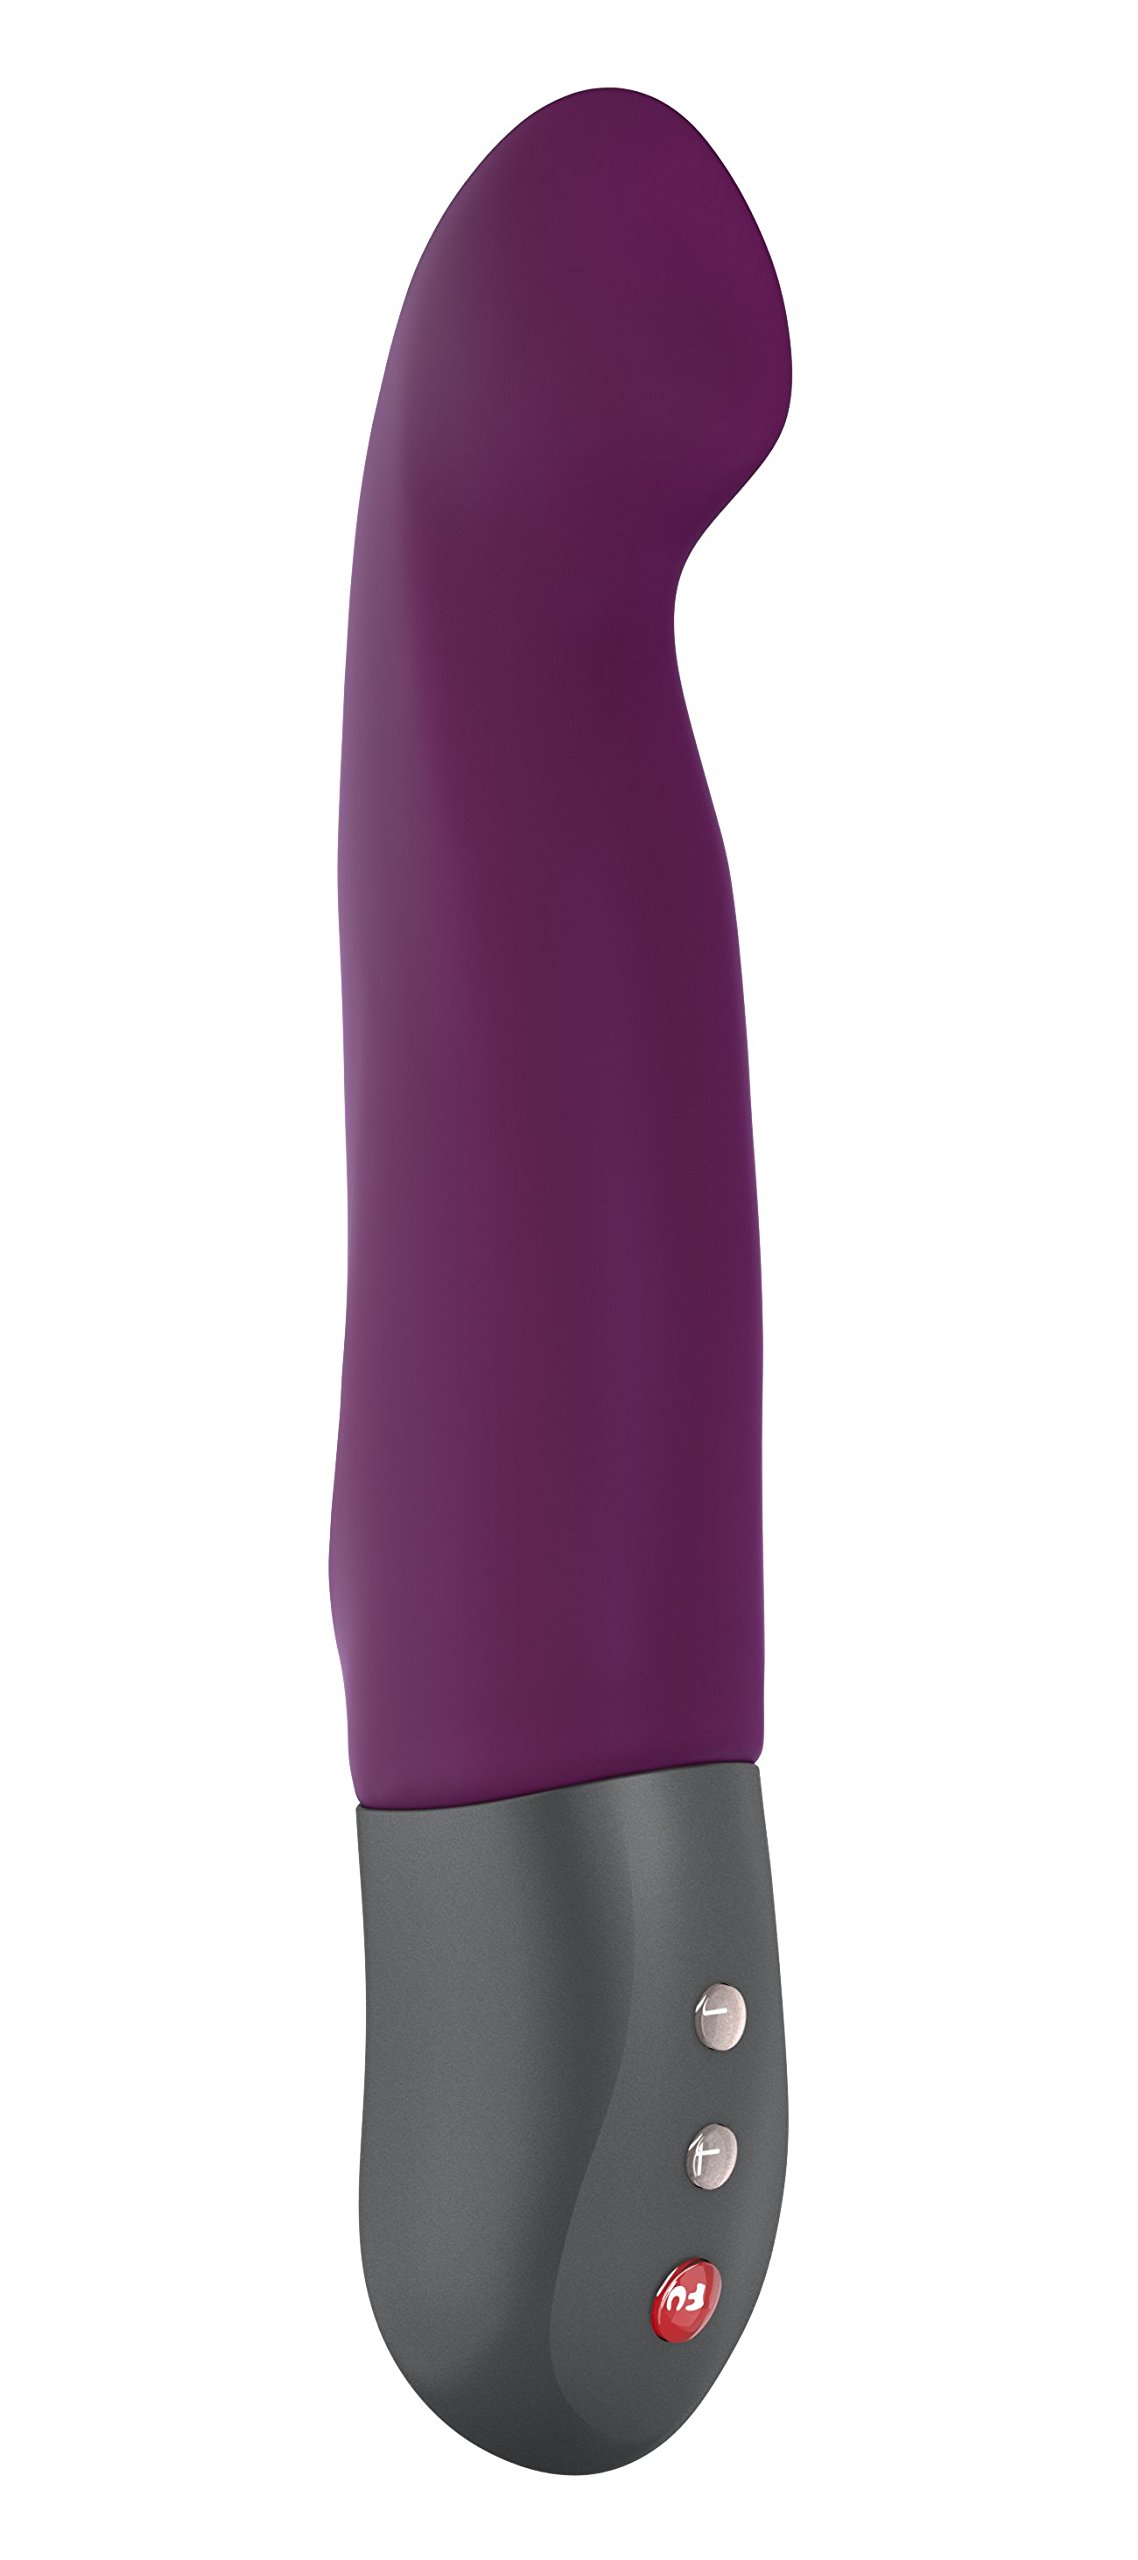 FUN FACTORY G-Punkt Pulsator STRONIC G (Violett) – G-Punkt-Toy mit Stoßfunktion, Sextoy für Frauen, stößt & pulsiert freihändig – hautfreundliches, medizinisches Silikon, Made in Germany